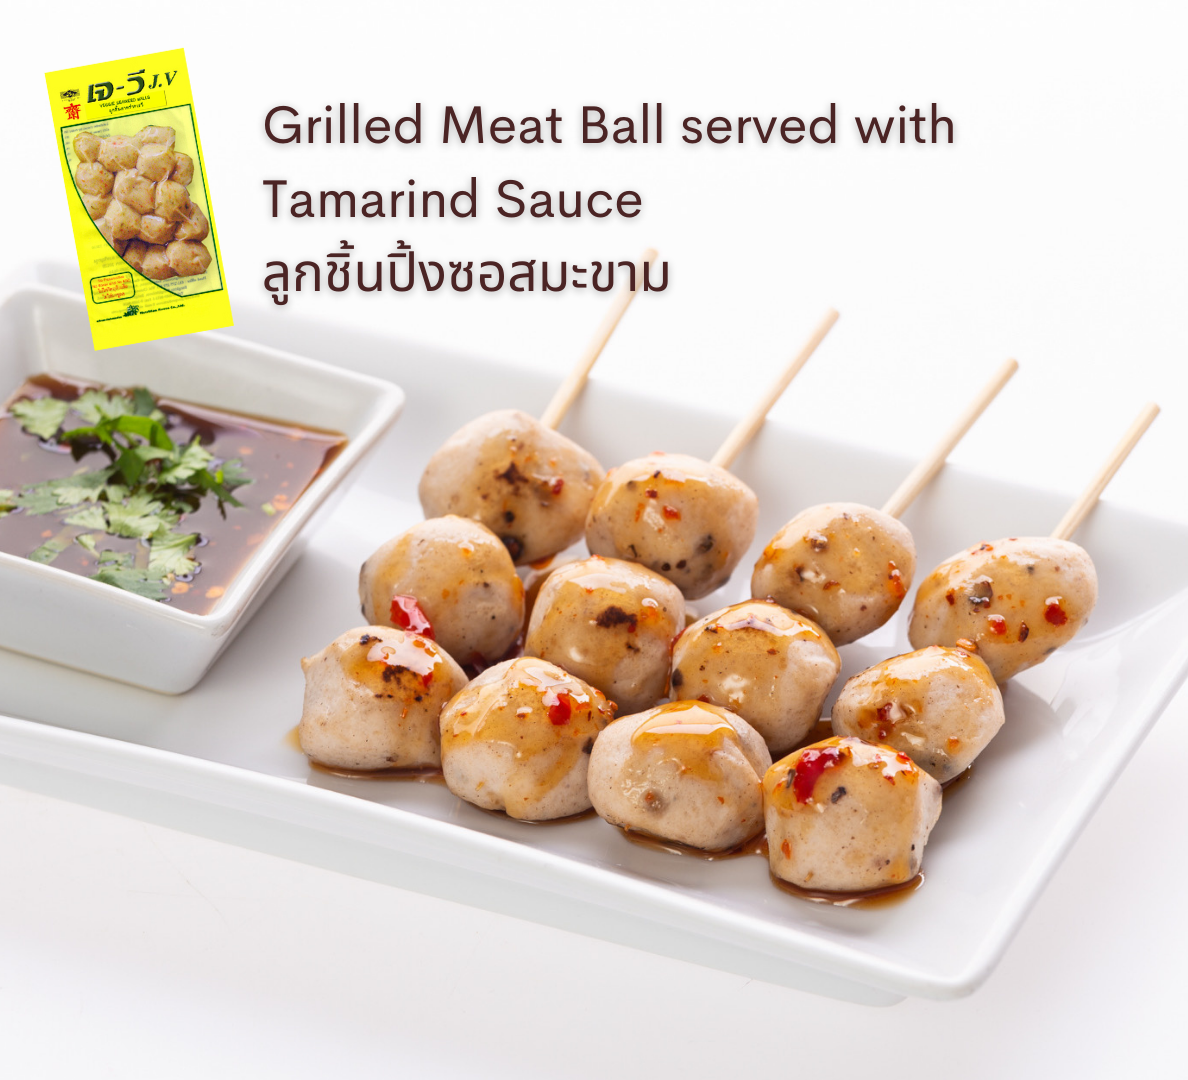 เมนูอาหารเจ-มังสวิรัติ spa foods vegan grilled meat ball served with tamarind sauce ลูกชิ้นปิ้งซอสมะขาม